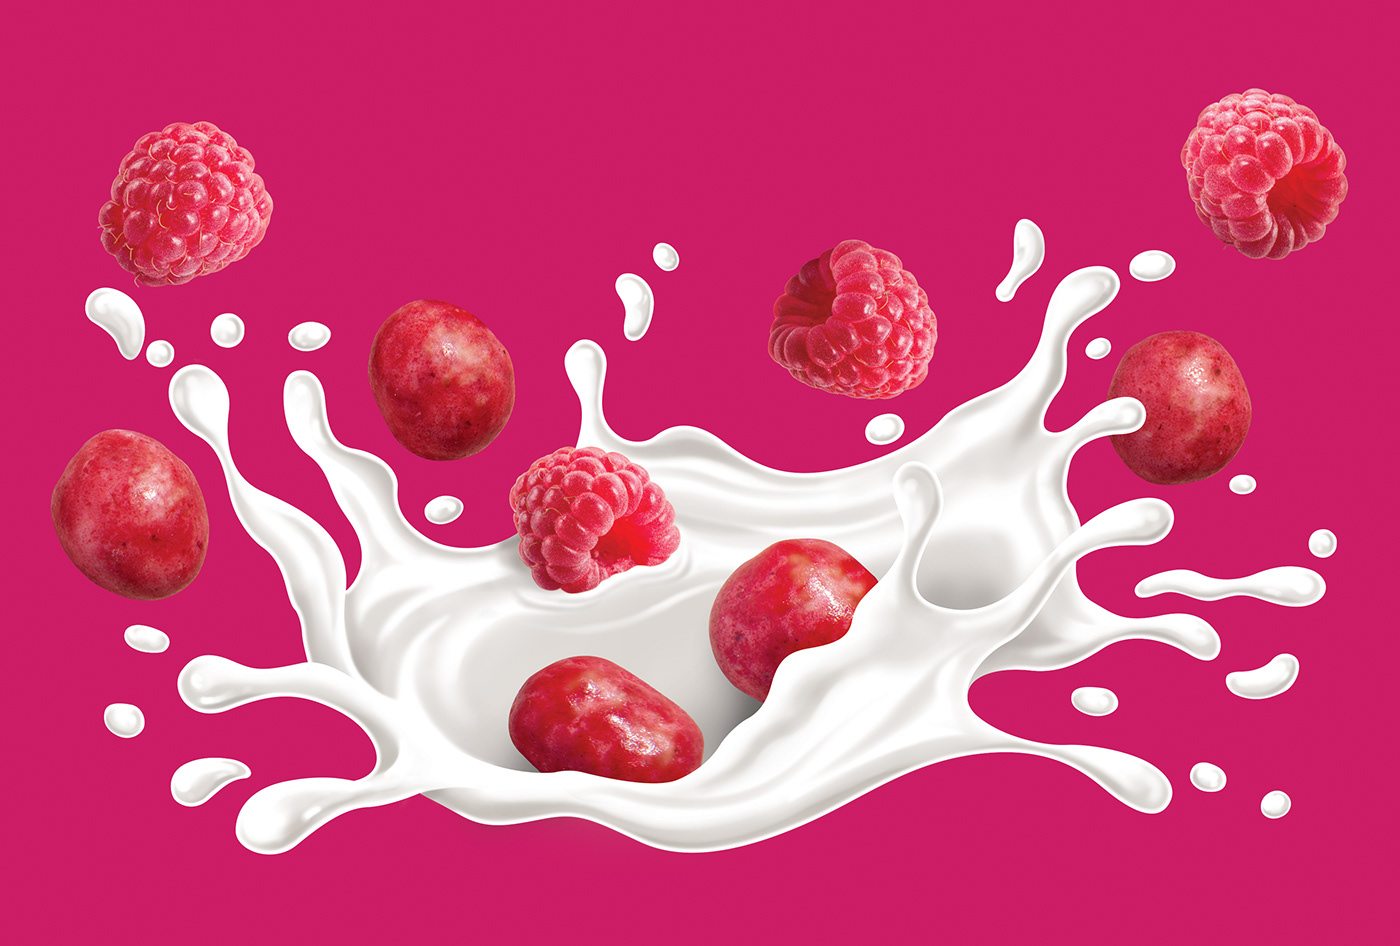 raspberries Packaging chocolate kinetica Protein Food Protein bars milk splash Food  food & drink